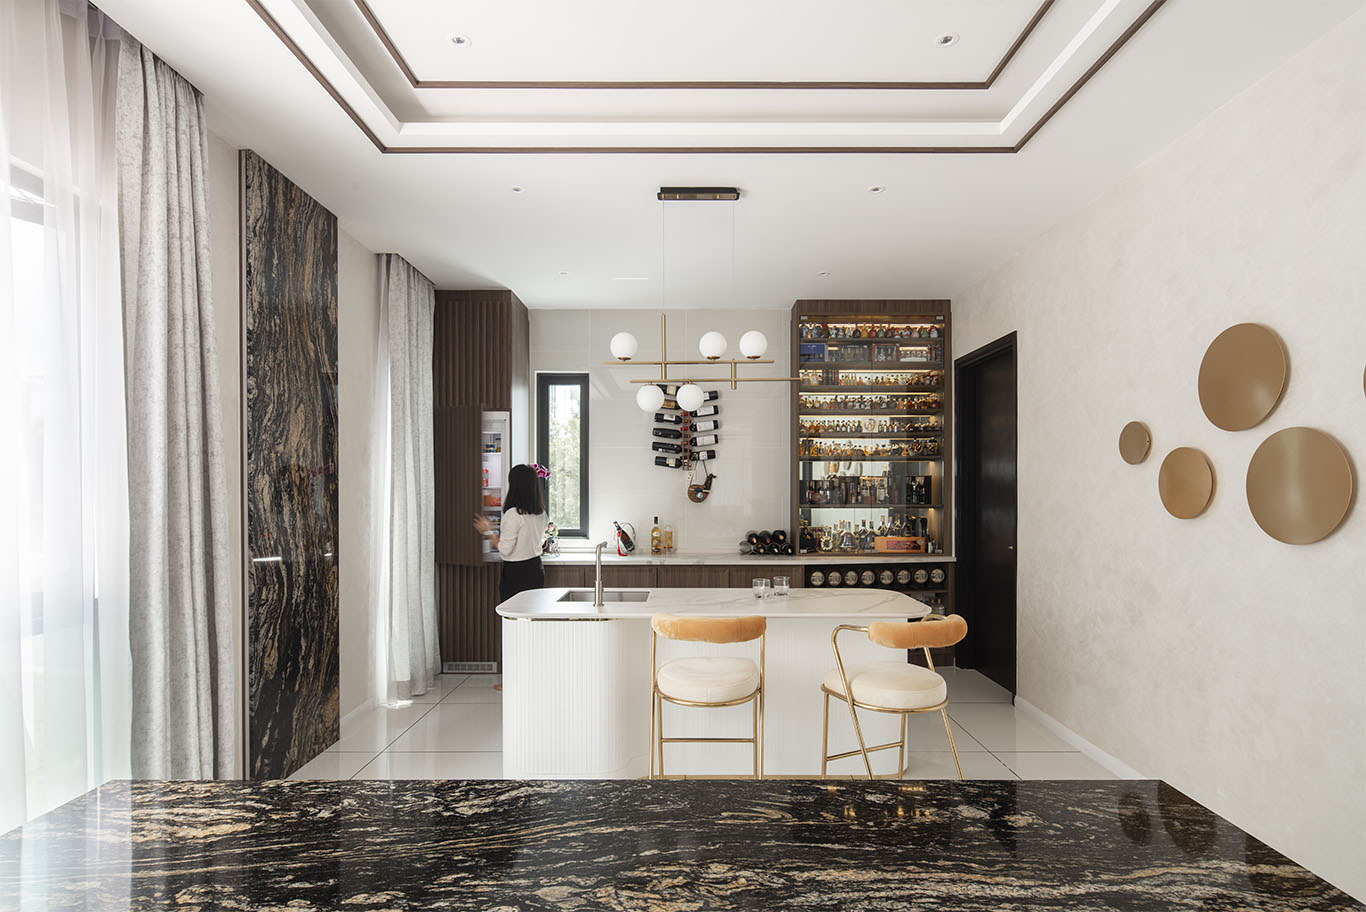 MIEUX La Famillie De Lee luxury mini bar design with black and gold marble mieux interior design